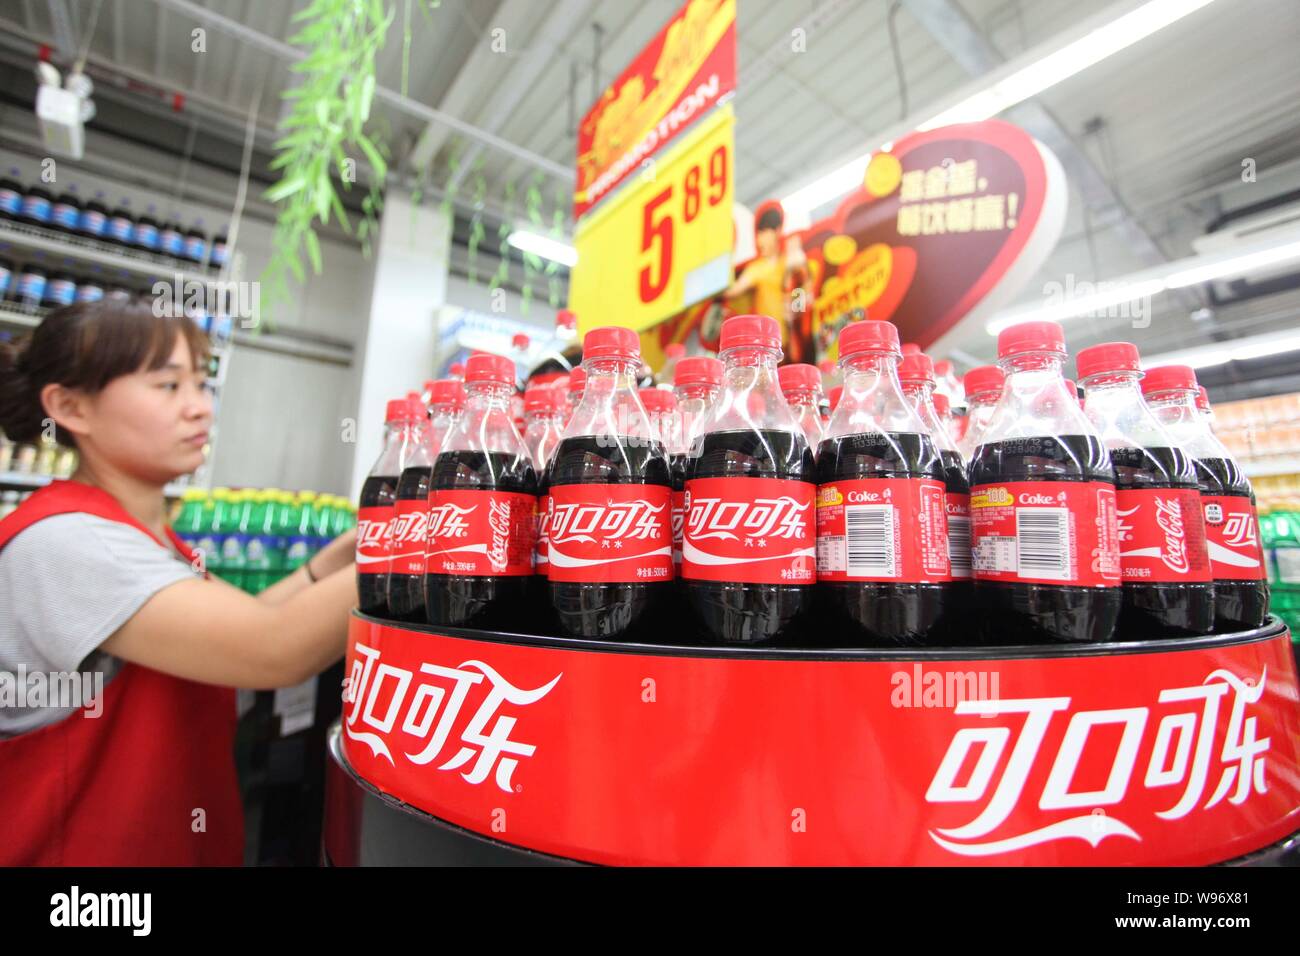 Coca cola staff fotografías e imágenes de alta resolución - Alamy